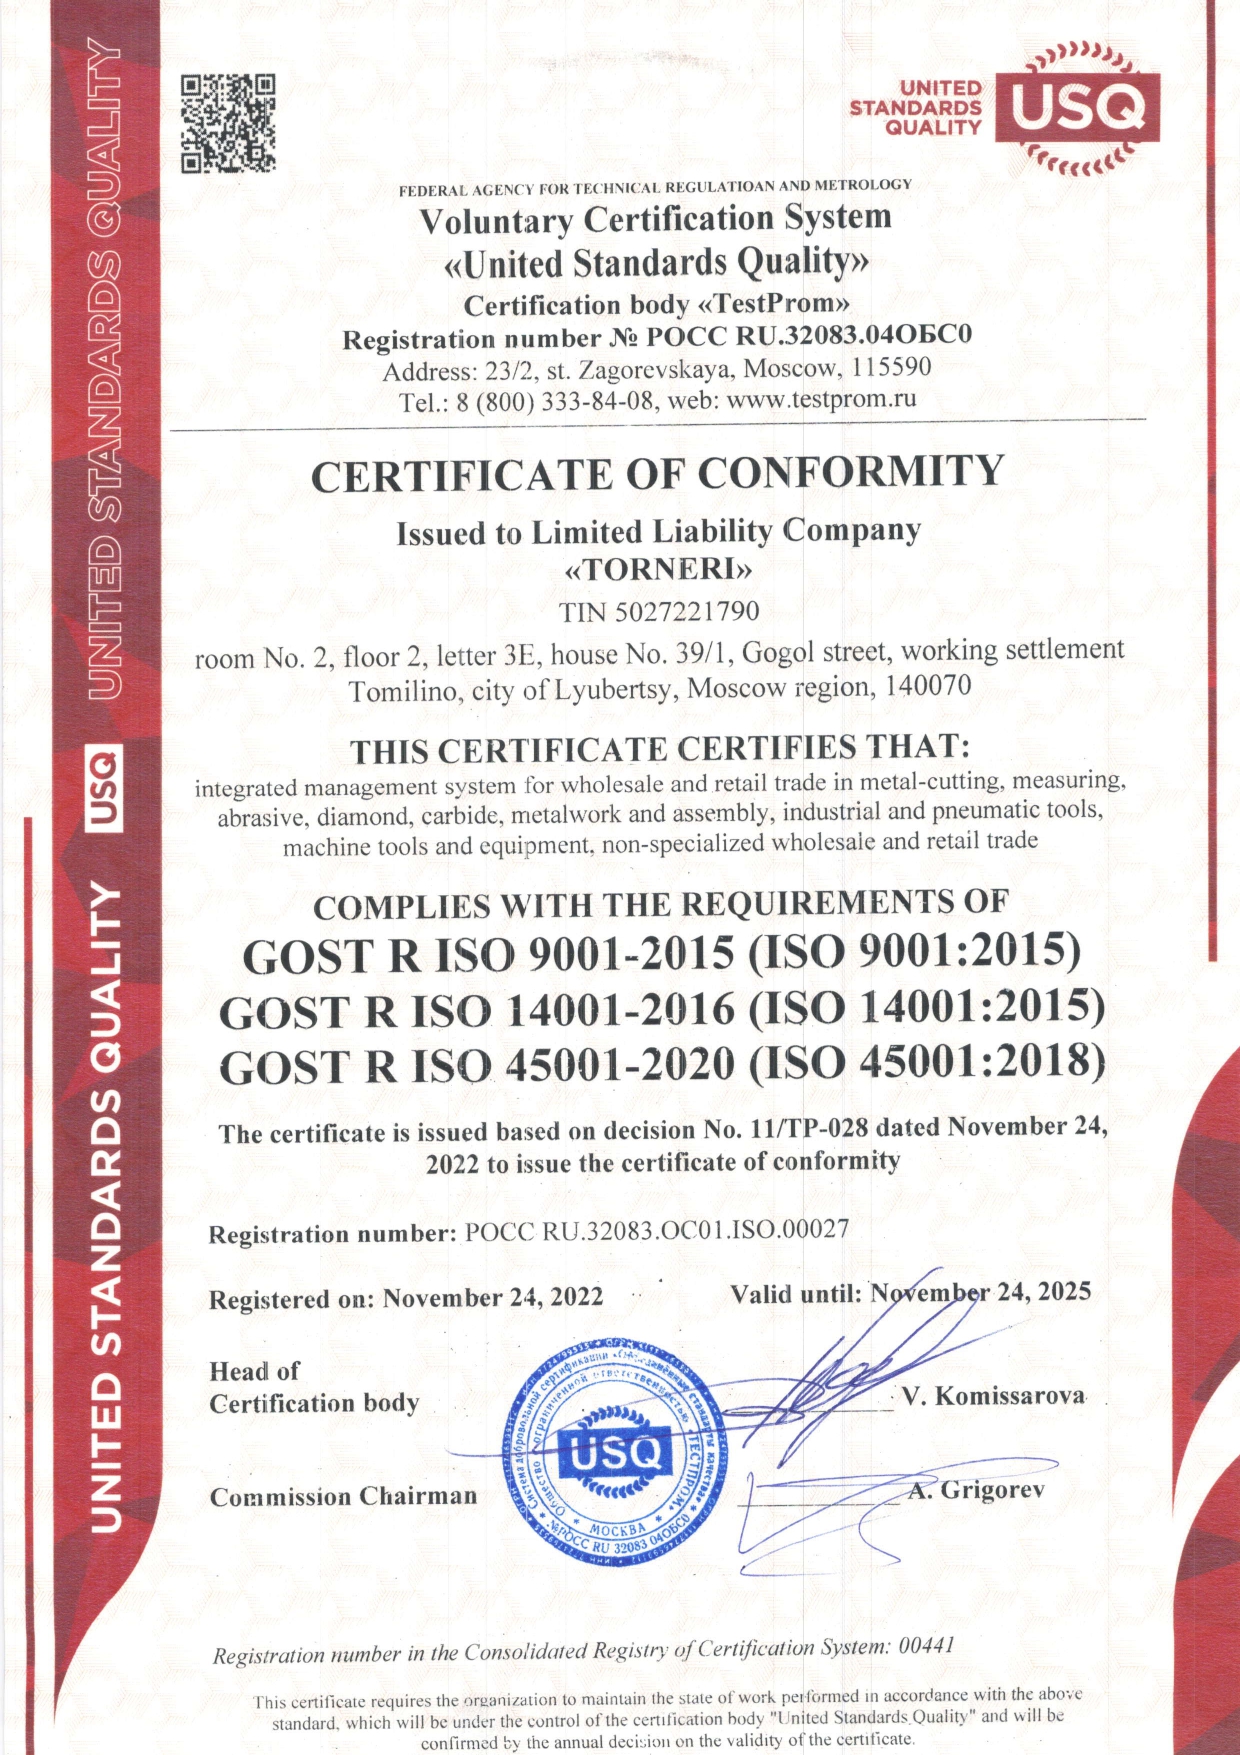 Сертификат соответствия ИСО 9001-2015 TORNERI английский